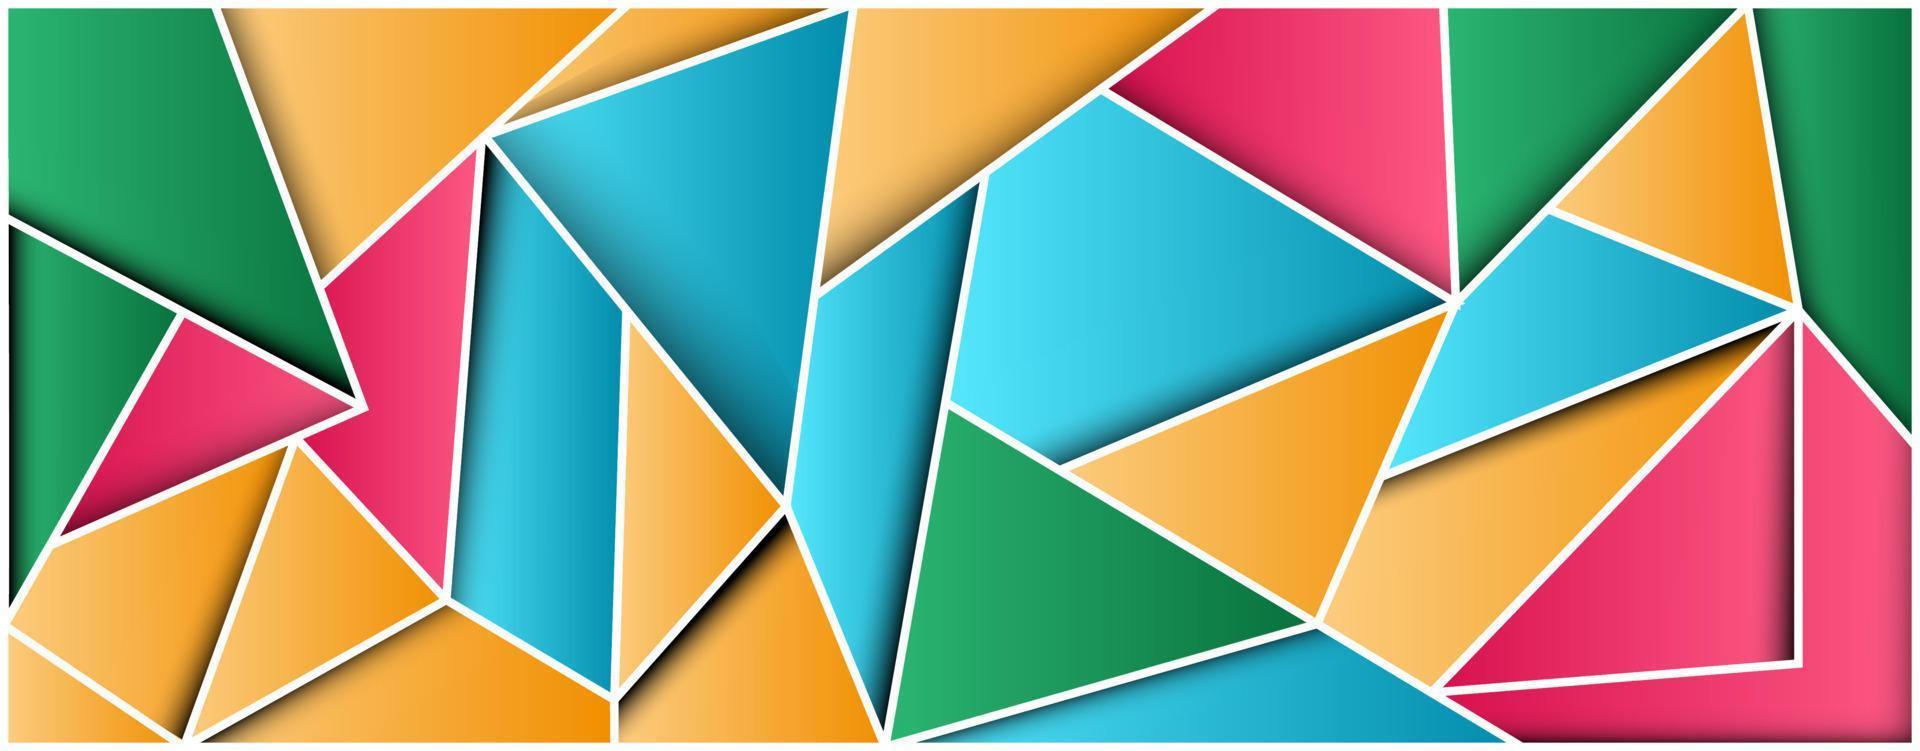 fond coloré géométrique. forme de triangle pour l'art mural, la bannière, la publicité de promotion des ventes et la conception de sites Web vecteur